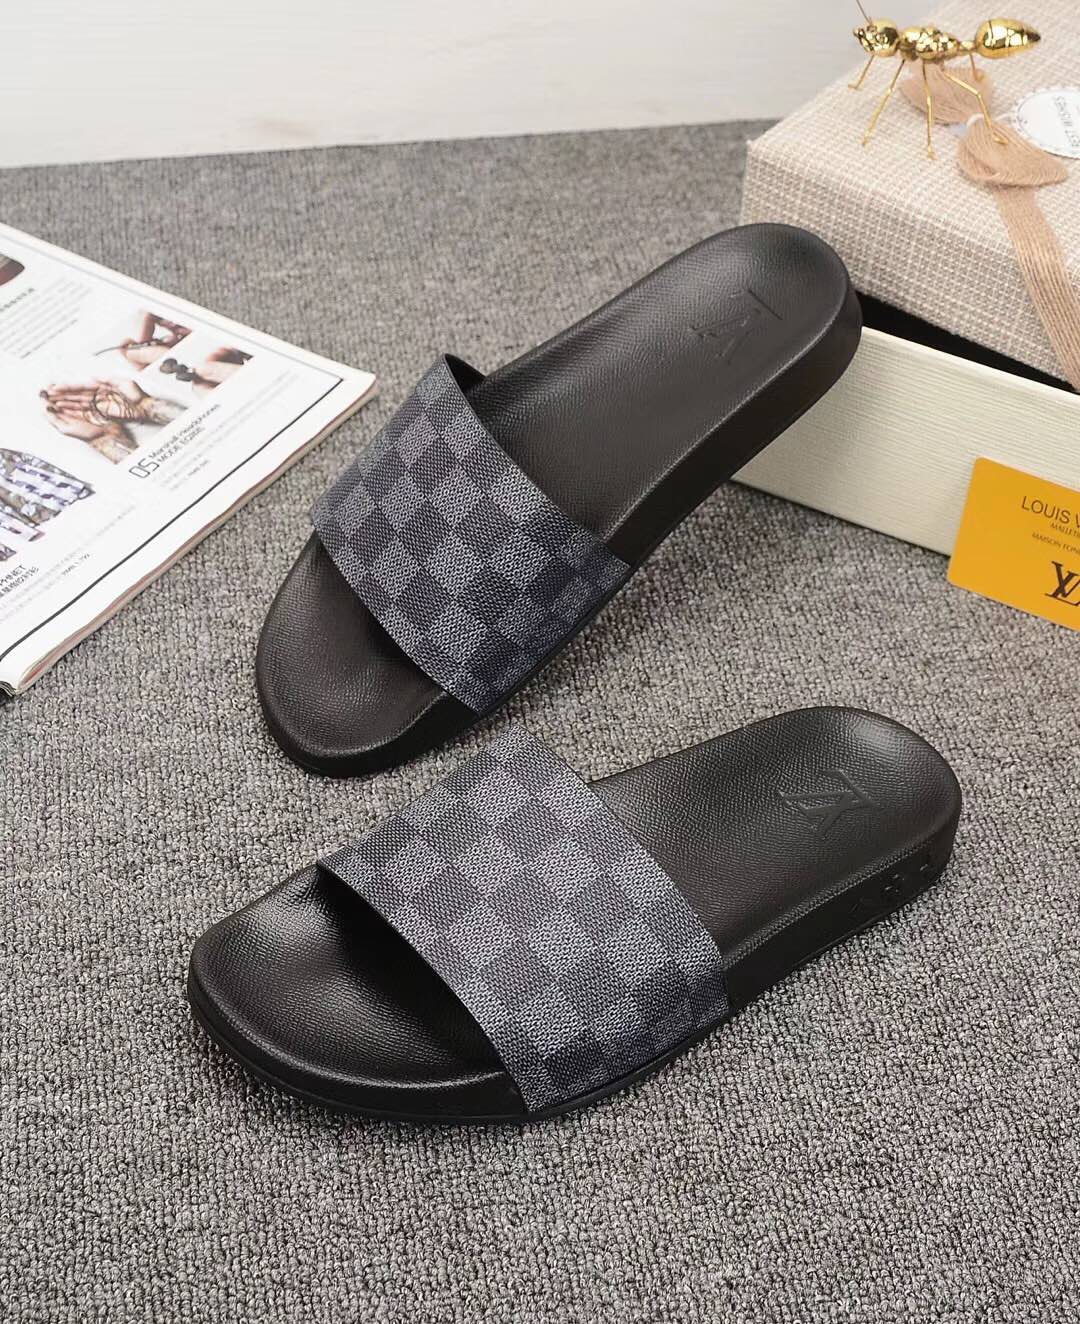 LV Louis Vuitton Men's Leather Sandals